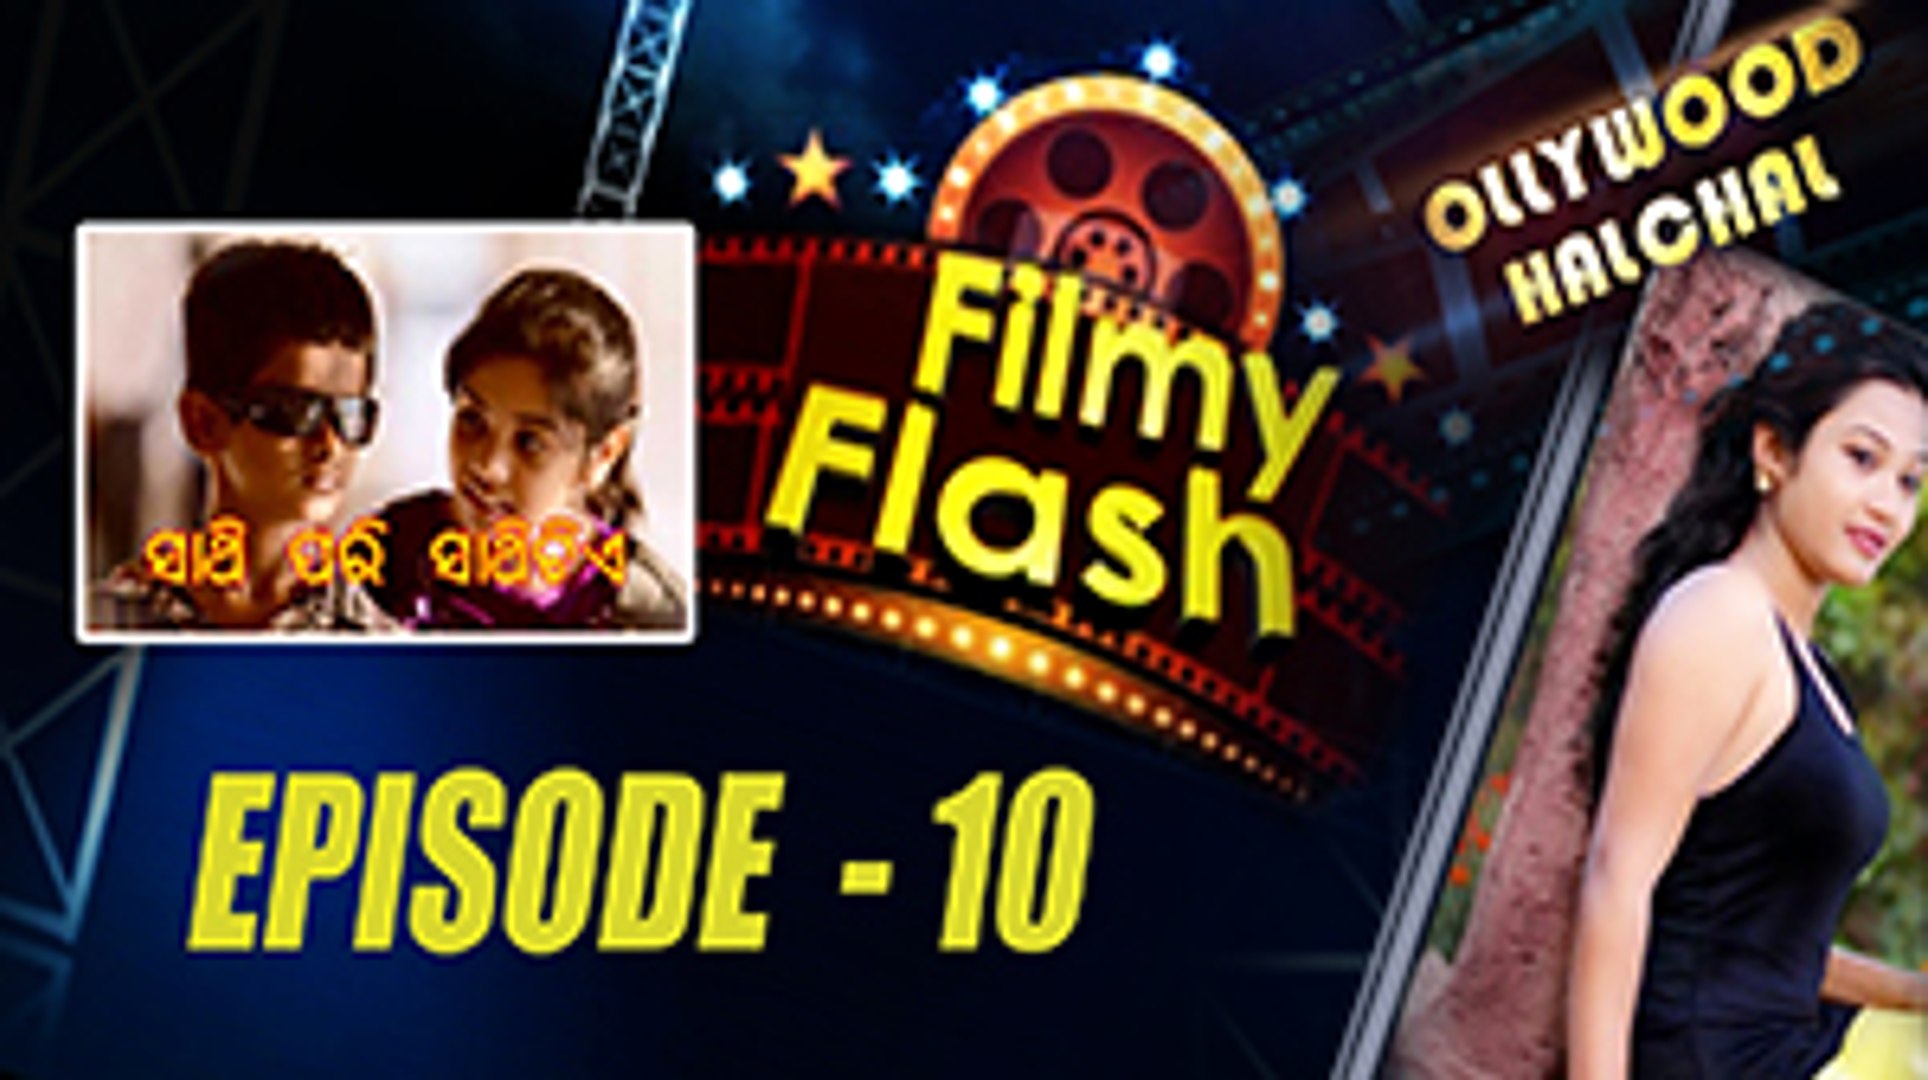 Sathi Pari Sathi Tiye Movie | Filmy Flash Episode 10 | Latest Odia Movie News | Odiaone